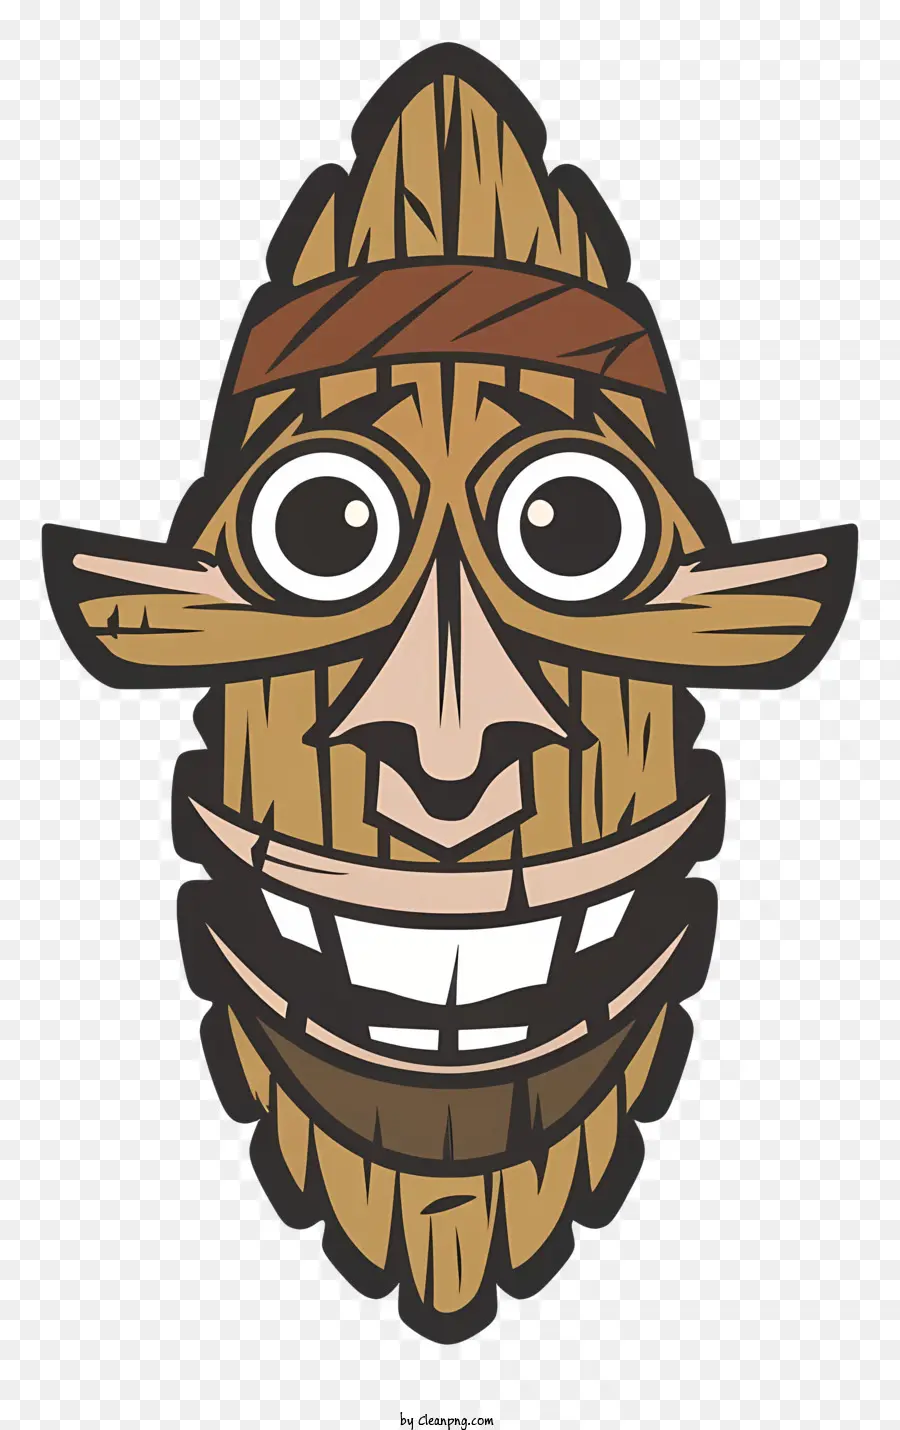 персонажа из мультфильма，Улыбающаяся деревянная маска PNG